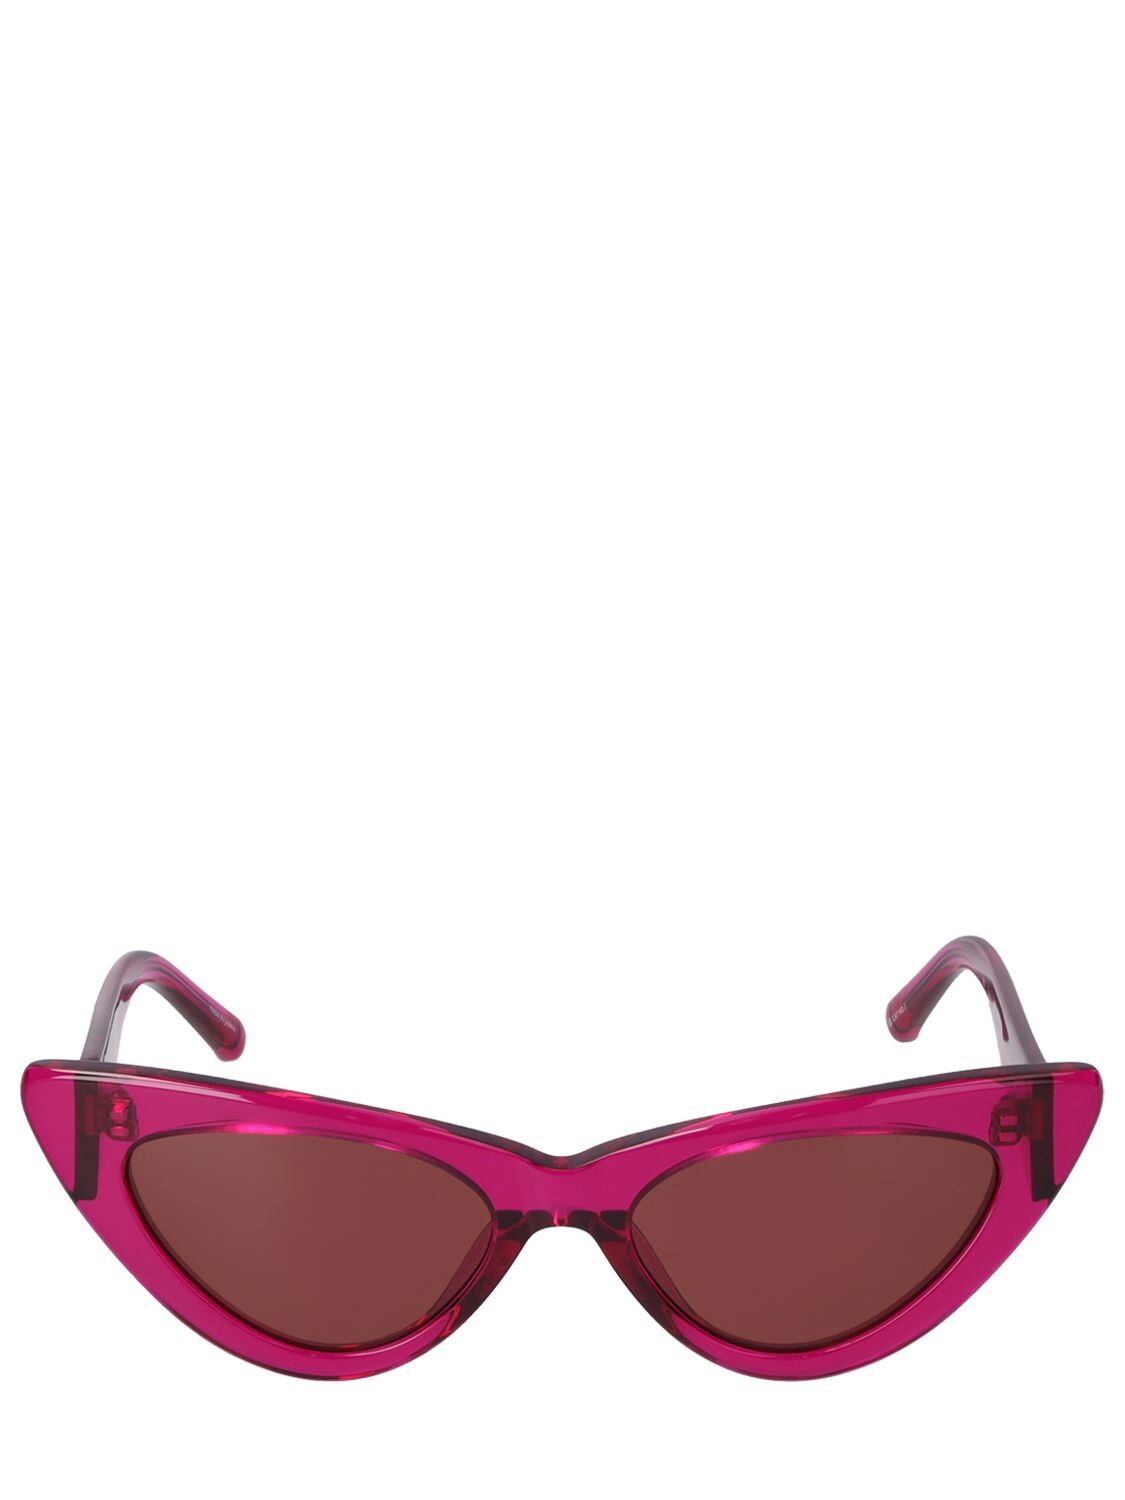 THE ATTICO Dora Cat-eye Acetate Sunglasses in brown / fuchsia